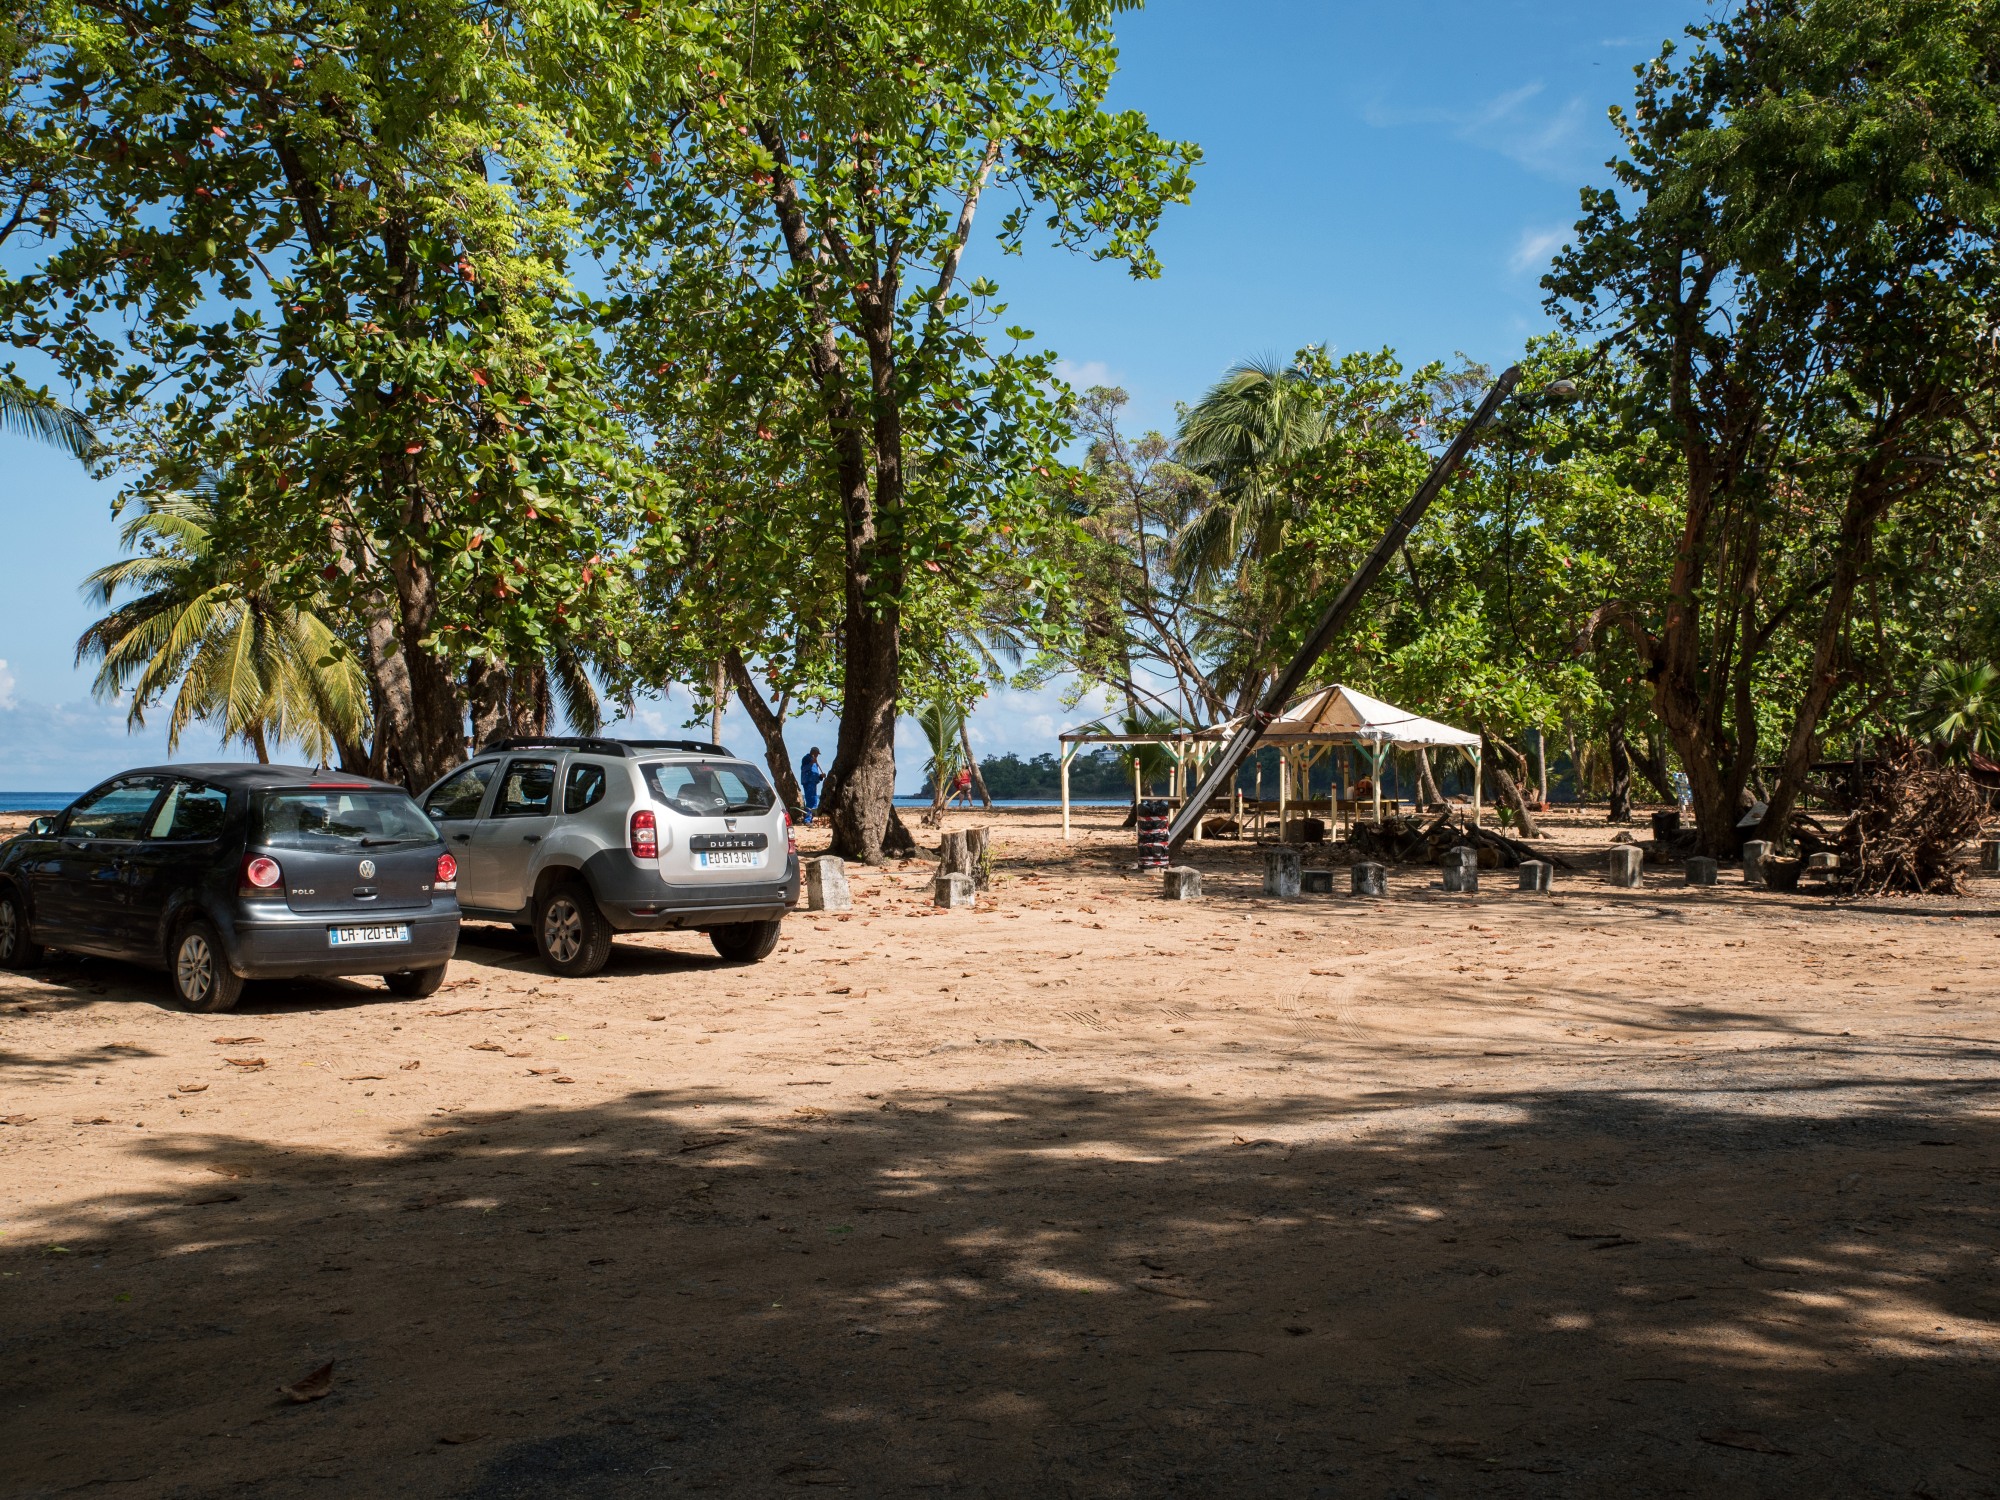 023 - Deshaies, Site classé de la plage de Grande Anse, octobre 2017